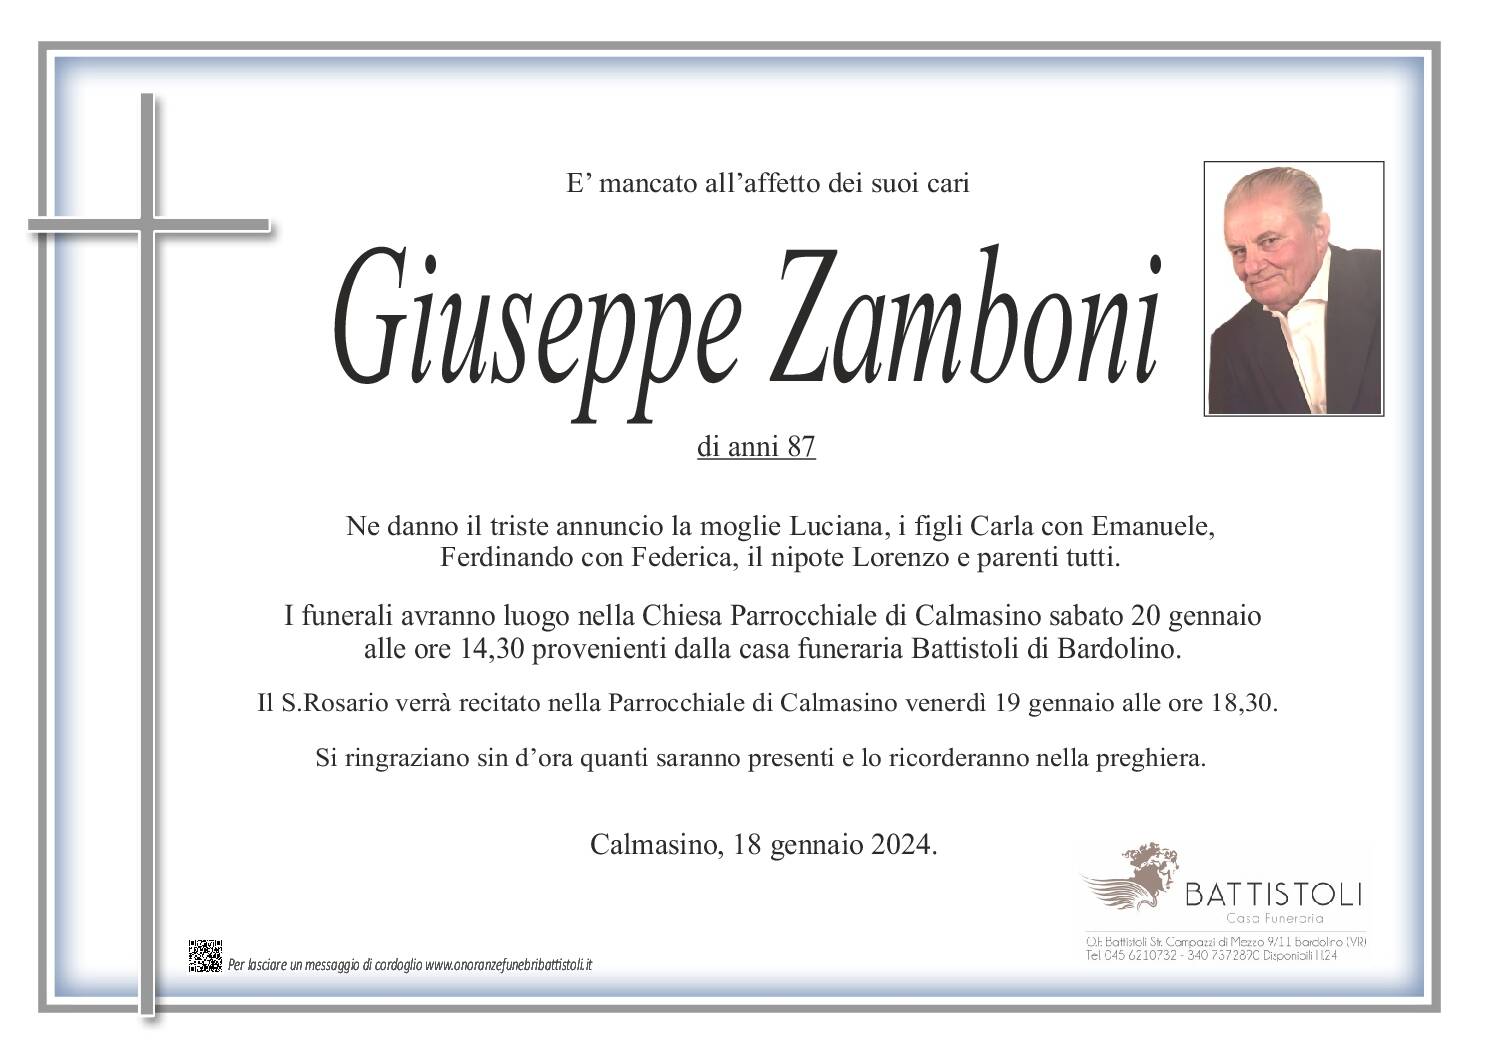 Zamboni Giuseppe